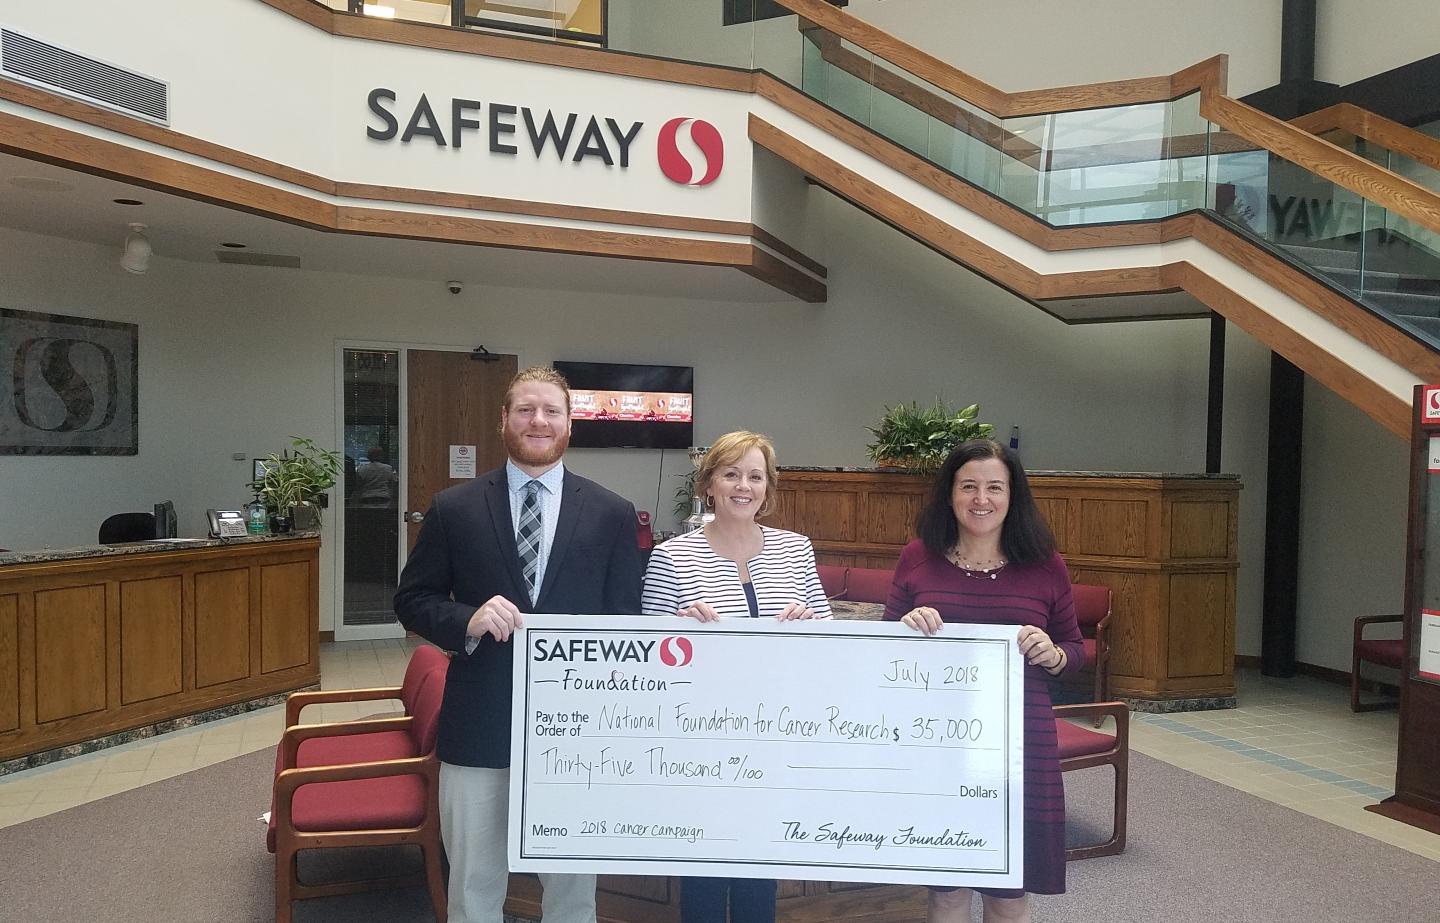 NFCR Receives Safeway Grant